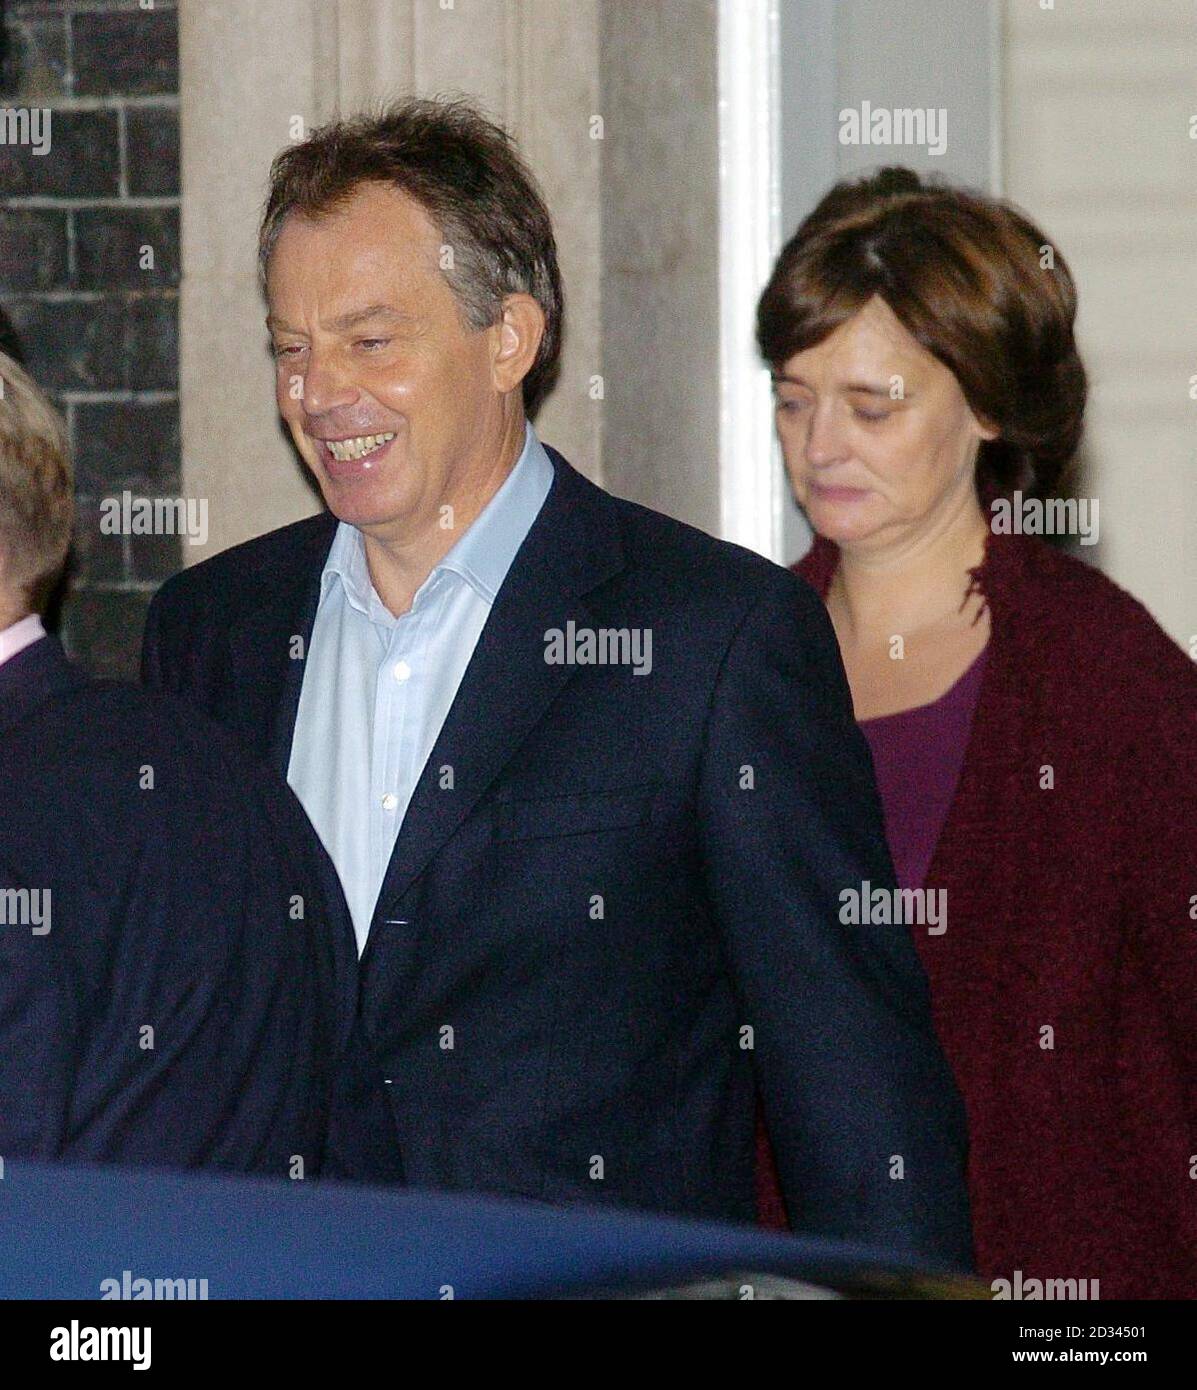 Der britische Premierminister Tony Blair verlässt die Downing Street in Begleitung seiner Frau Cherie, um sich einer Behandlung wegen einer wiederkehrenden Herzerkrankung zu unterziehen. Der 51-jährige Premierminister sagte am Donnerstag, dass er eine volle dritte Amtszeit, wenn er gewählt wird, abtreten würde. Stockfoto